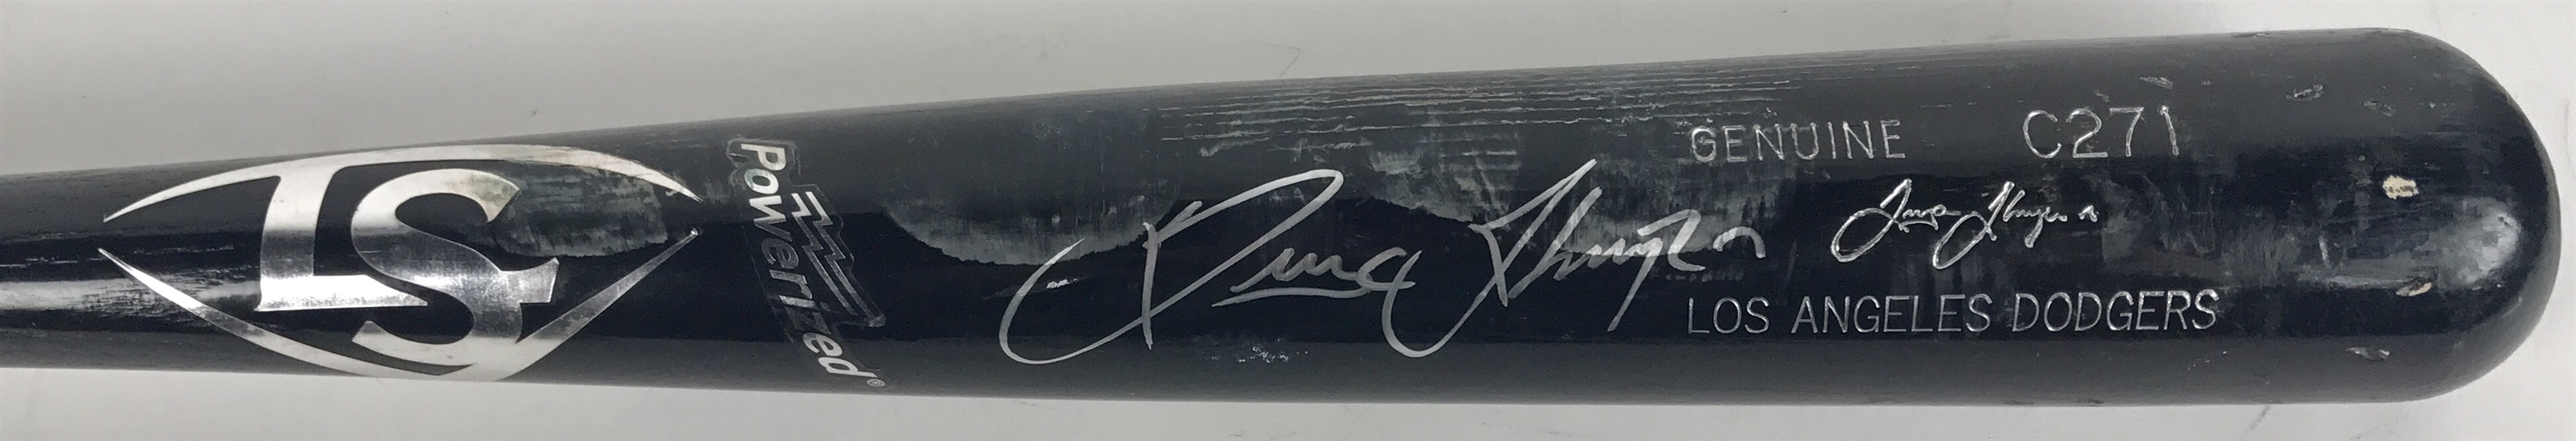 Trayce Thompson 2016 Game Used & Signed C271 Louisville Slugger Bat (JSA)